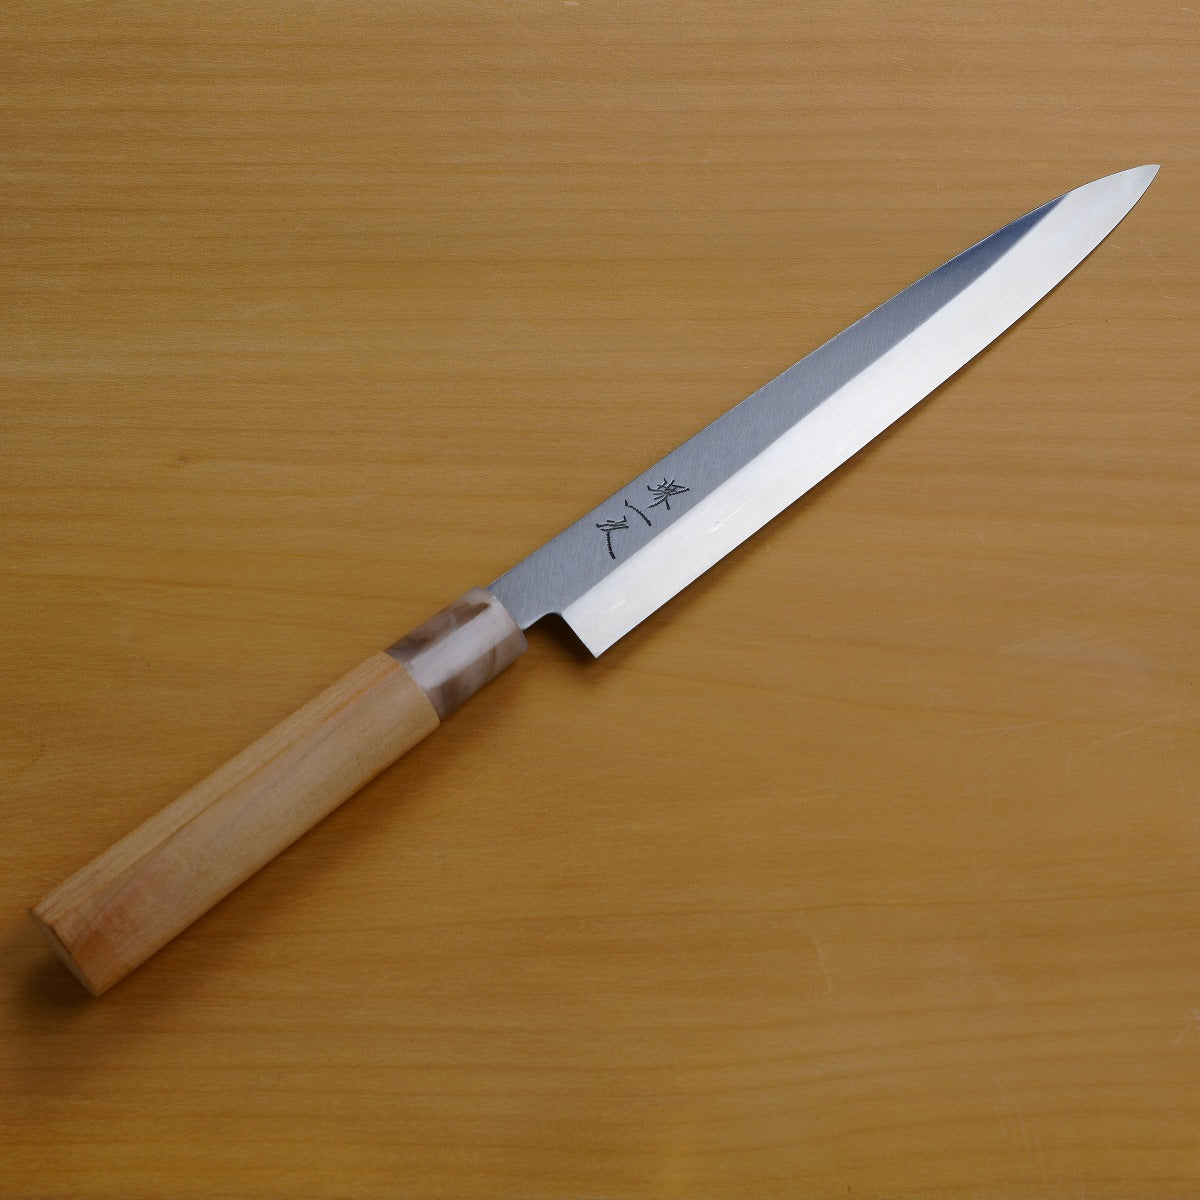  <堺 一次> 柳刃 (刺身刀) 不鏽鋼, 210mm